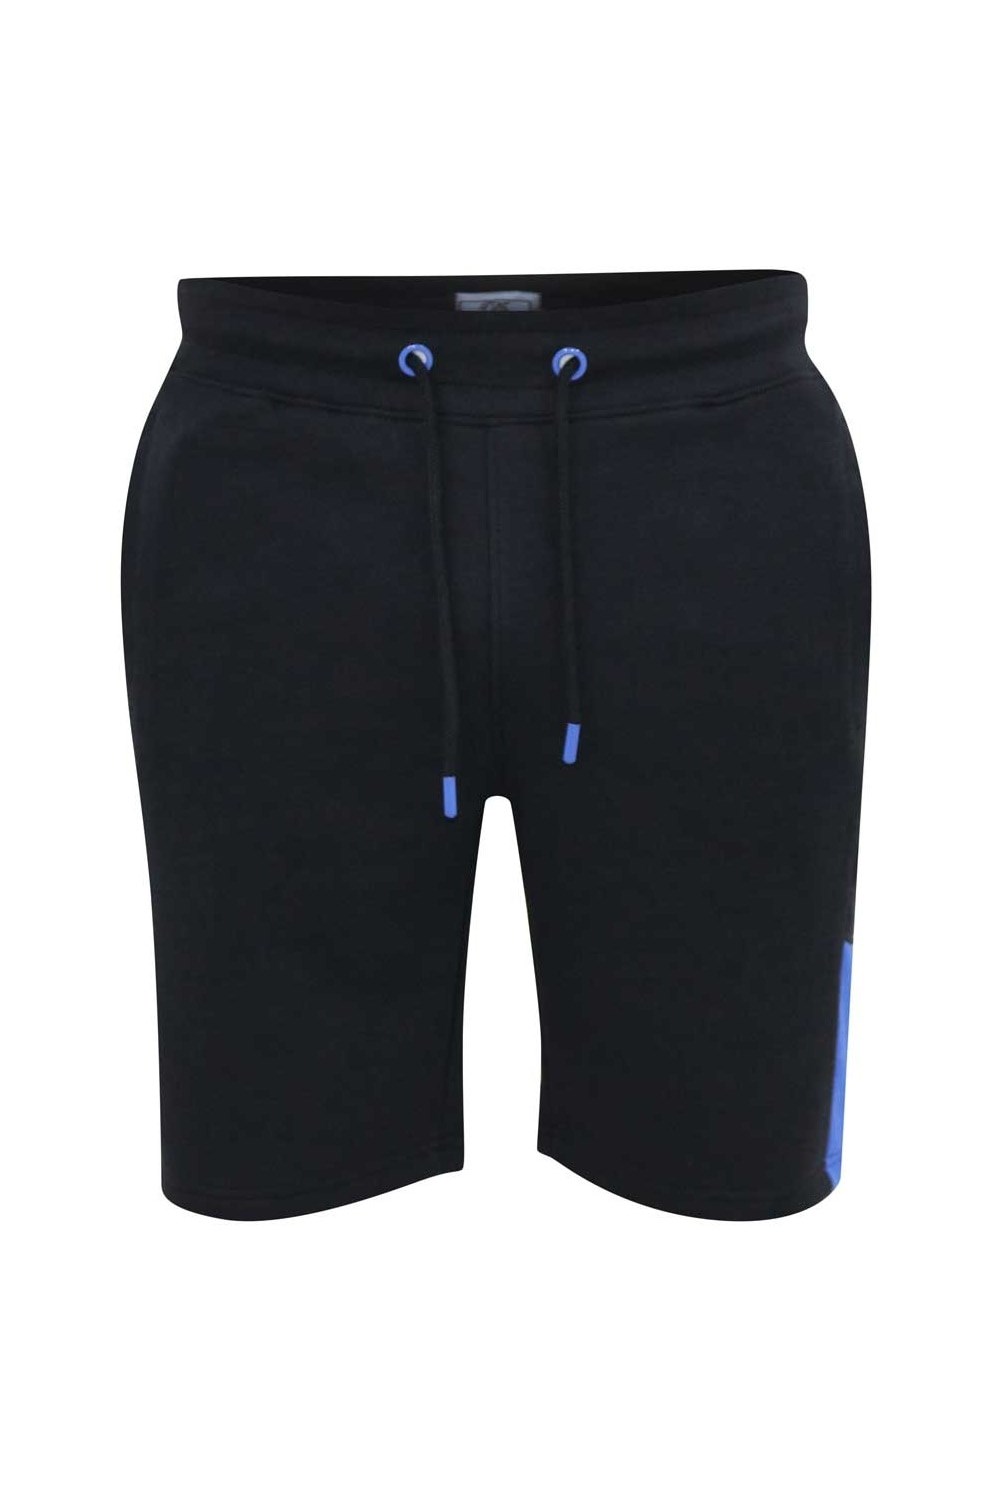 Drayton D555 Mens Side Panels Kingsize Shorts -